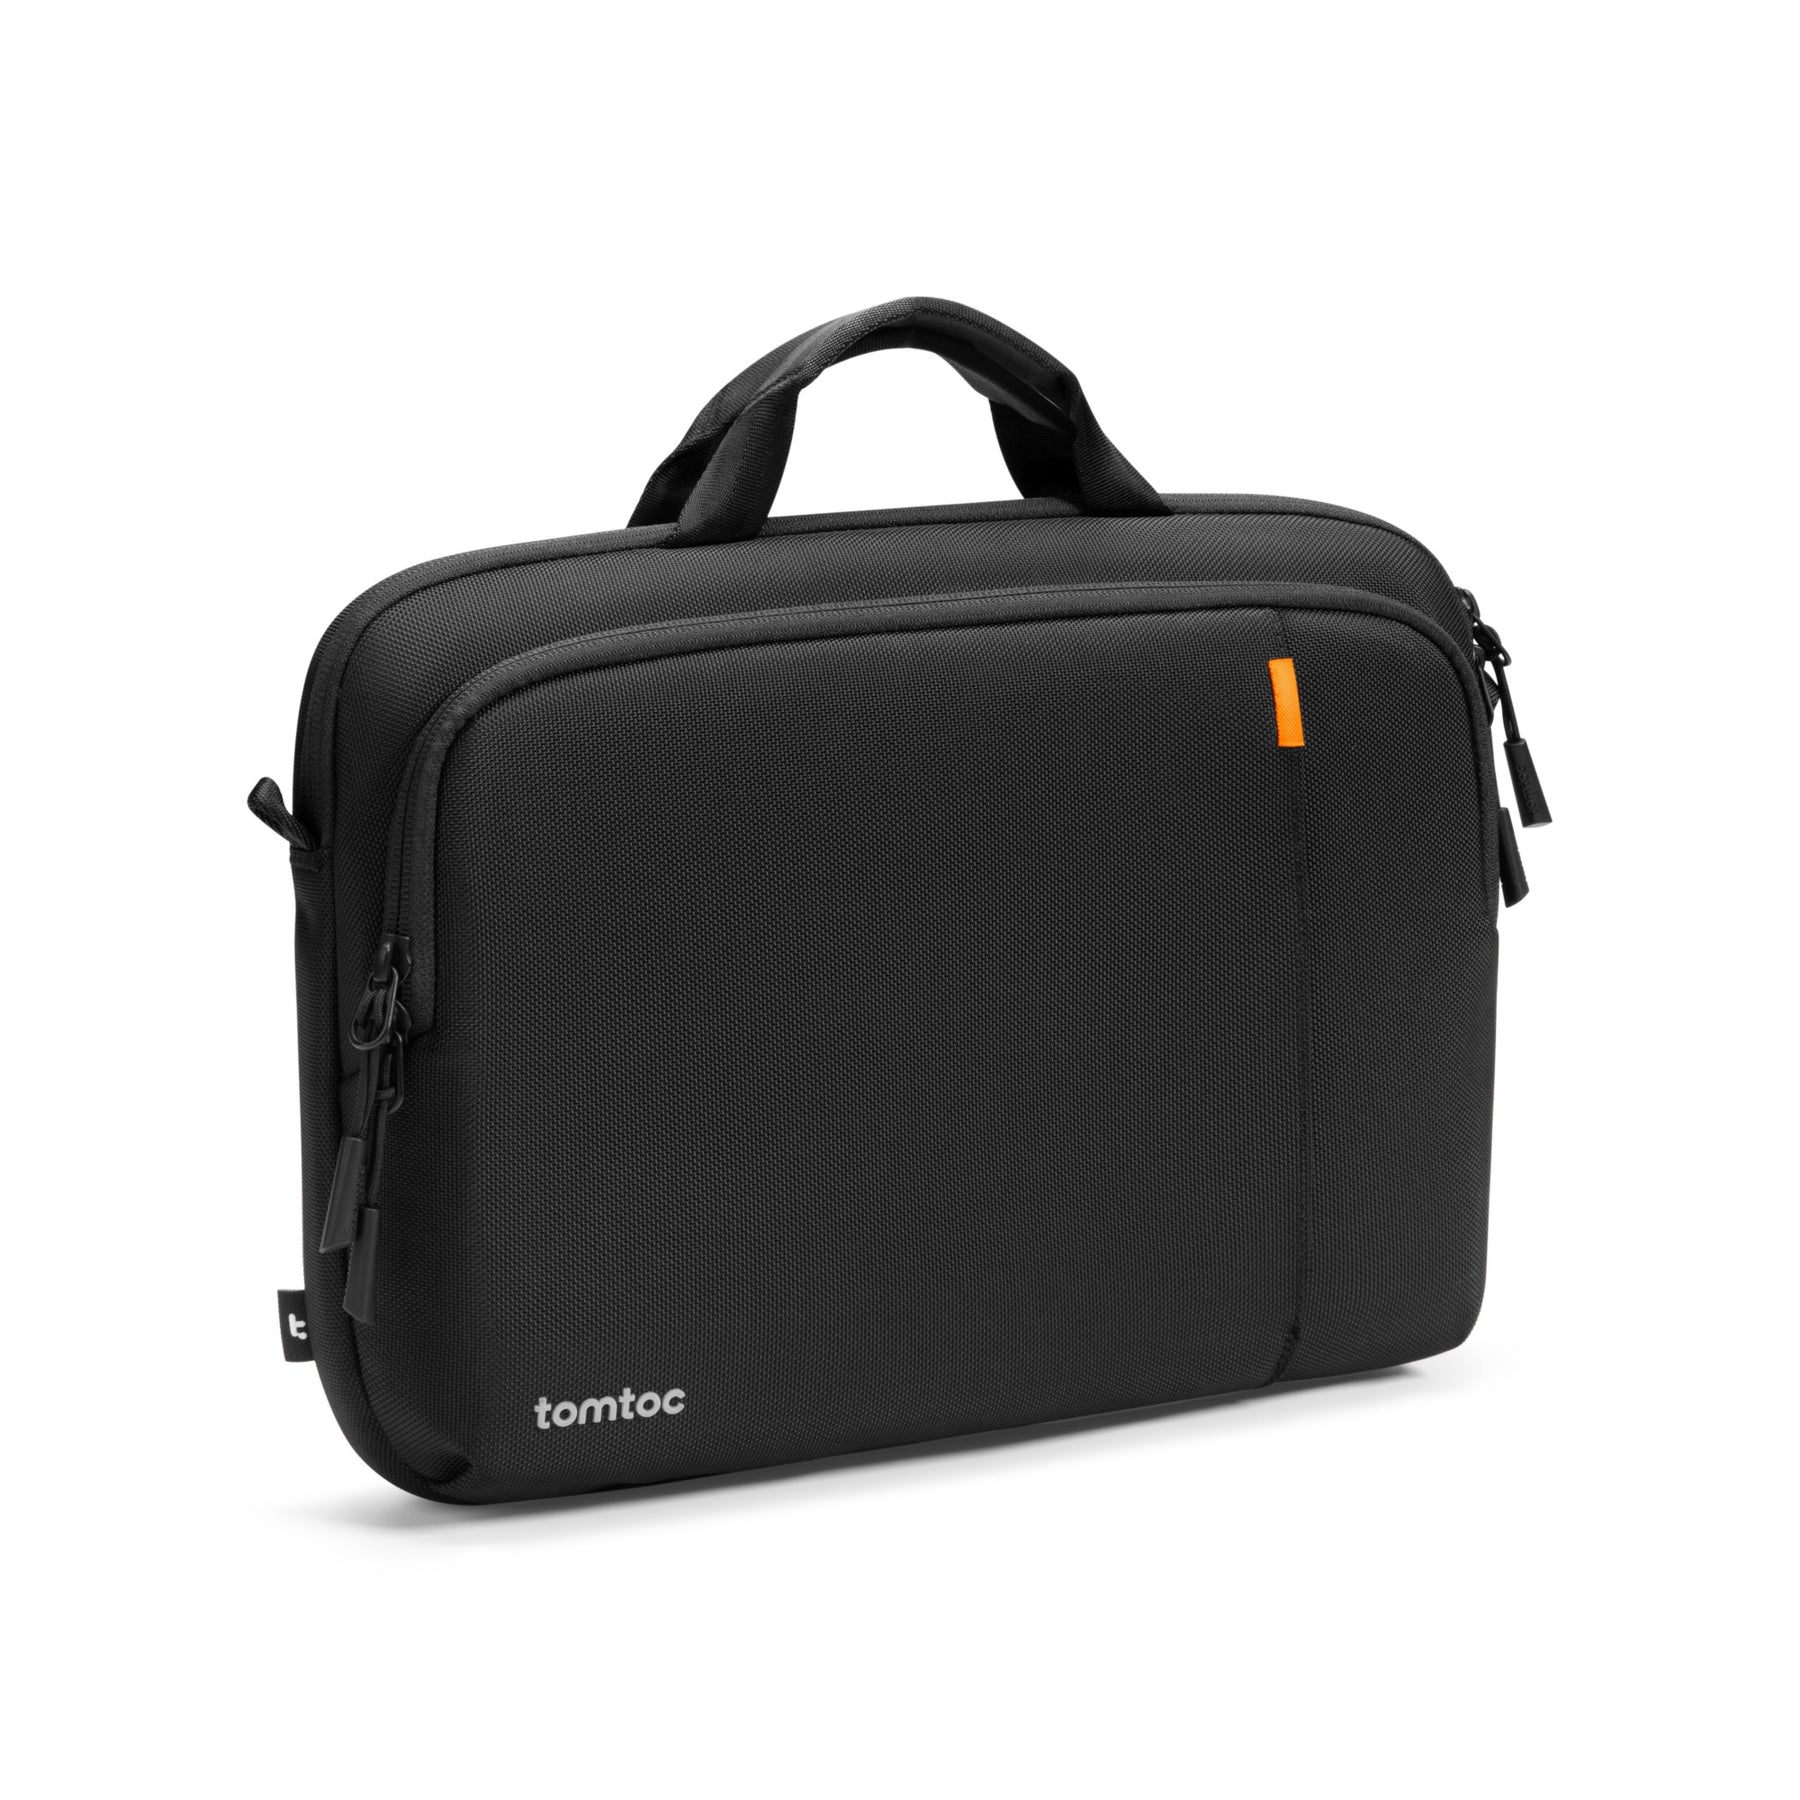 Defender-A30 Laptop Case with Shoulder Strap